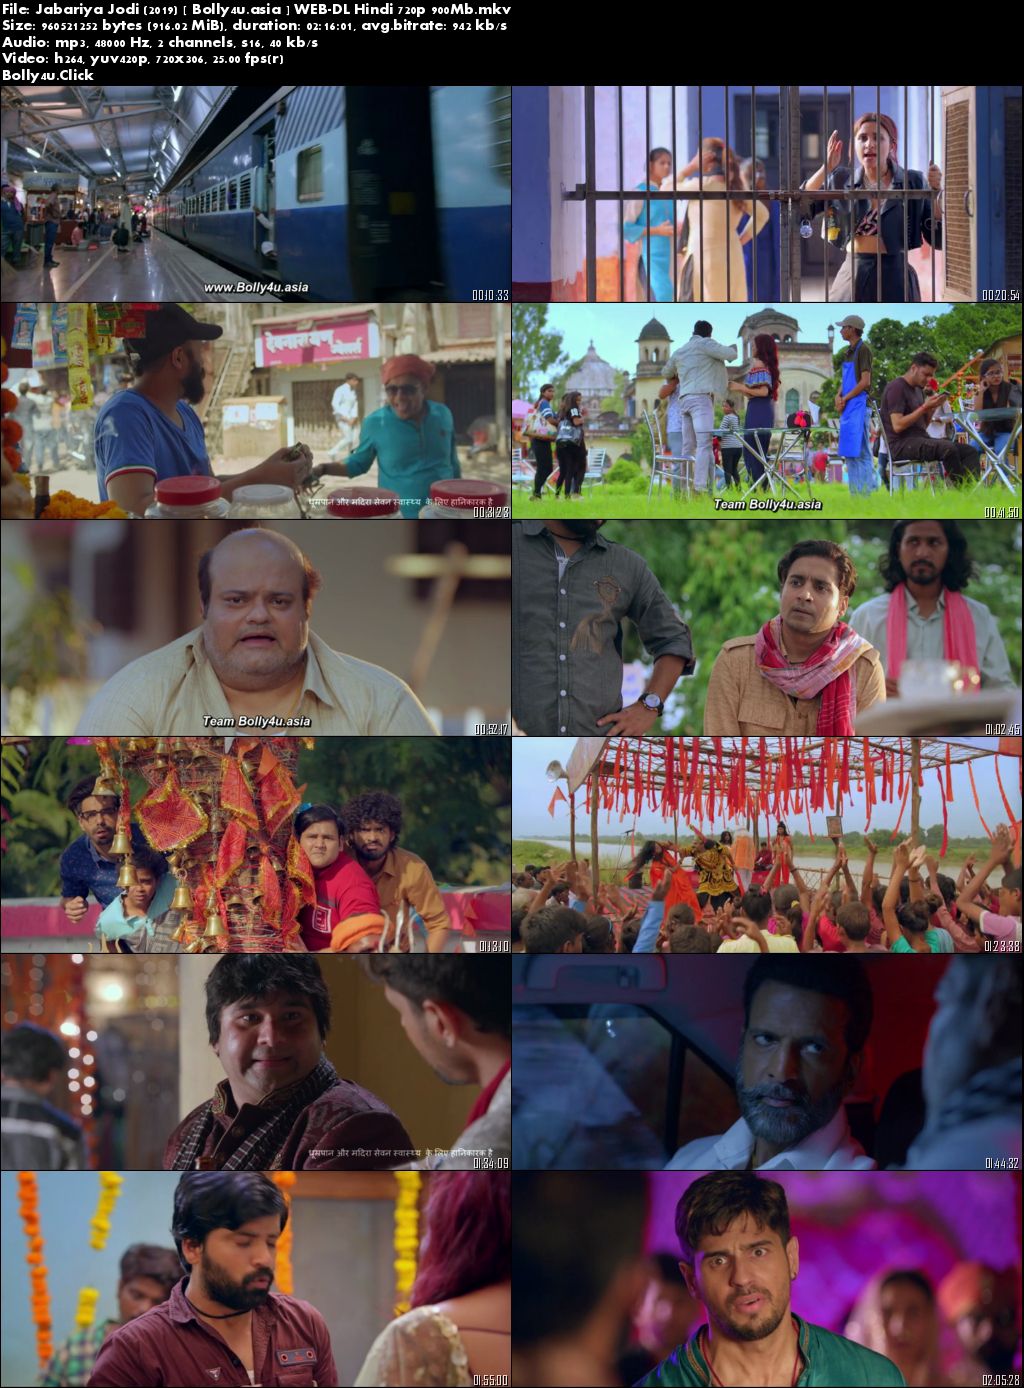 Jabariya Jodi 2019 WEB-DL 900MB Full Hindi Movie Download 720p